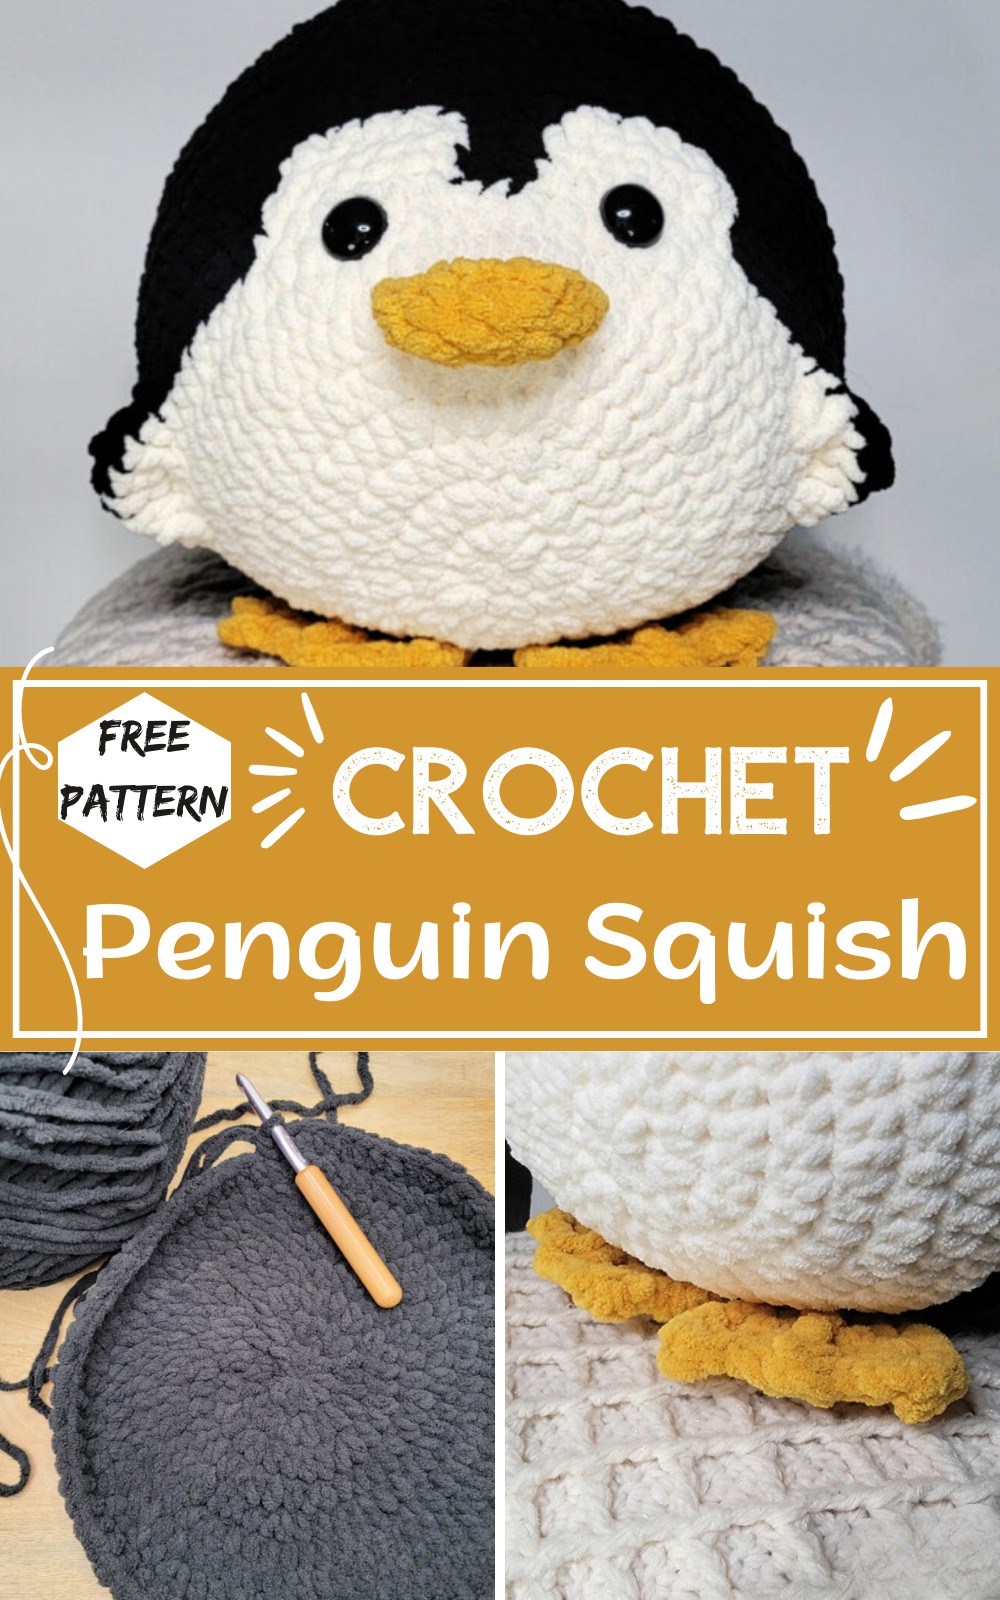 Crochet Penguin Squish